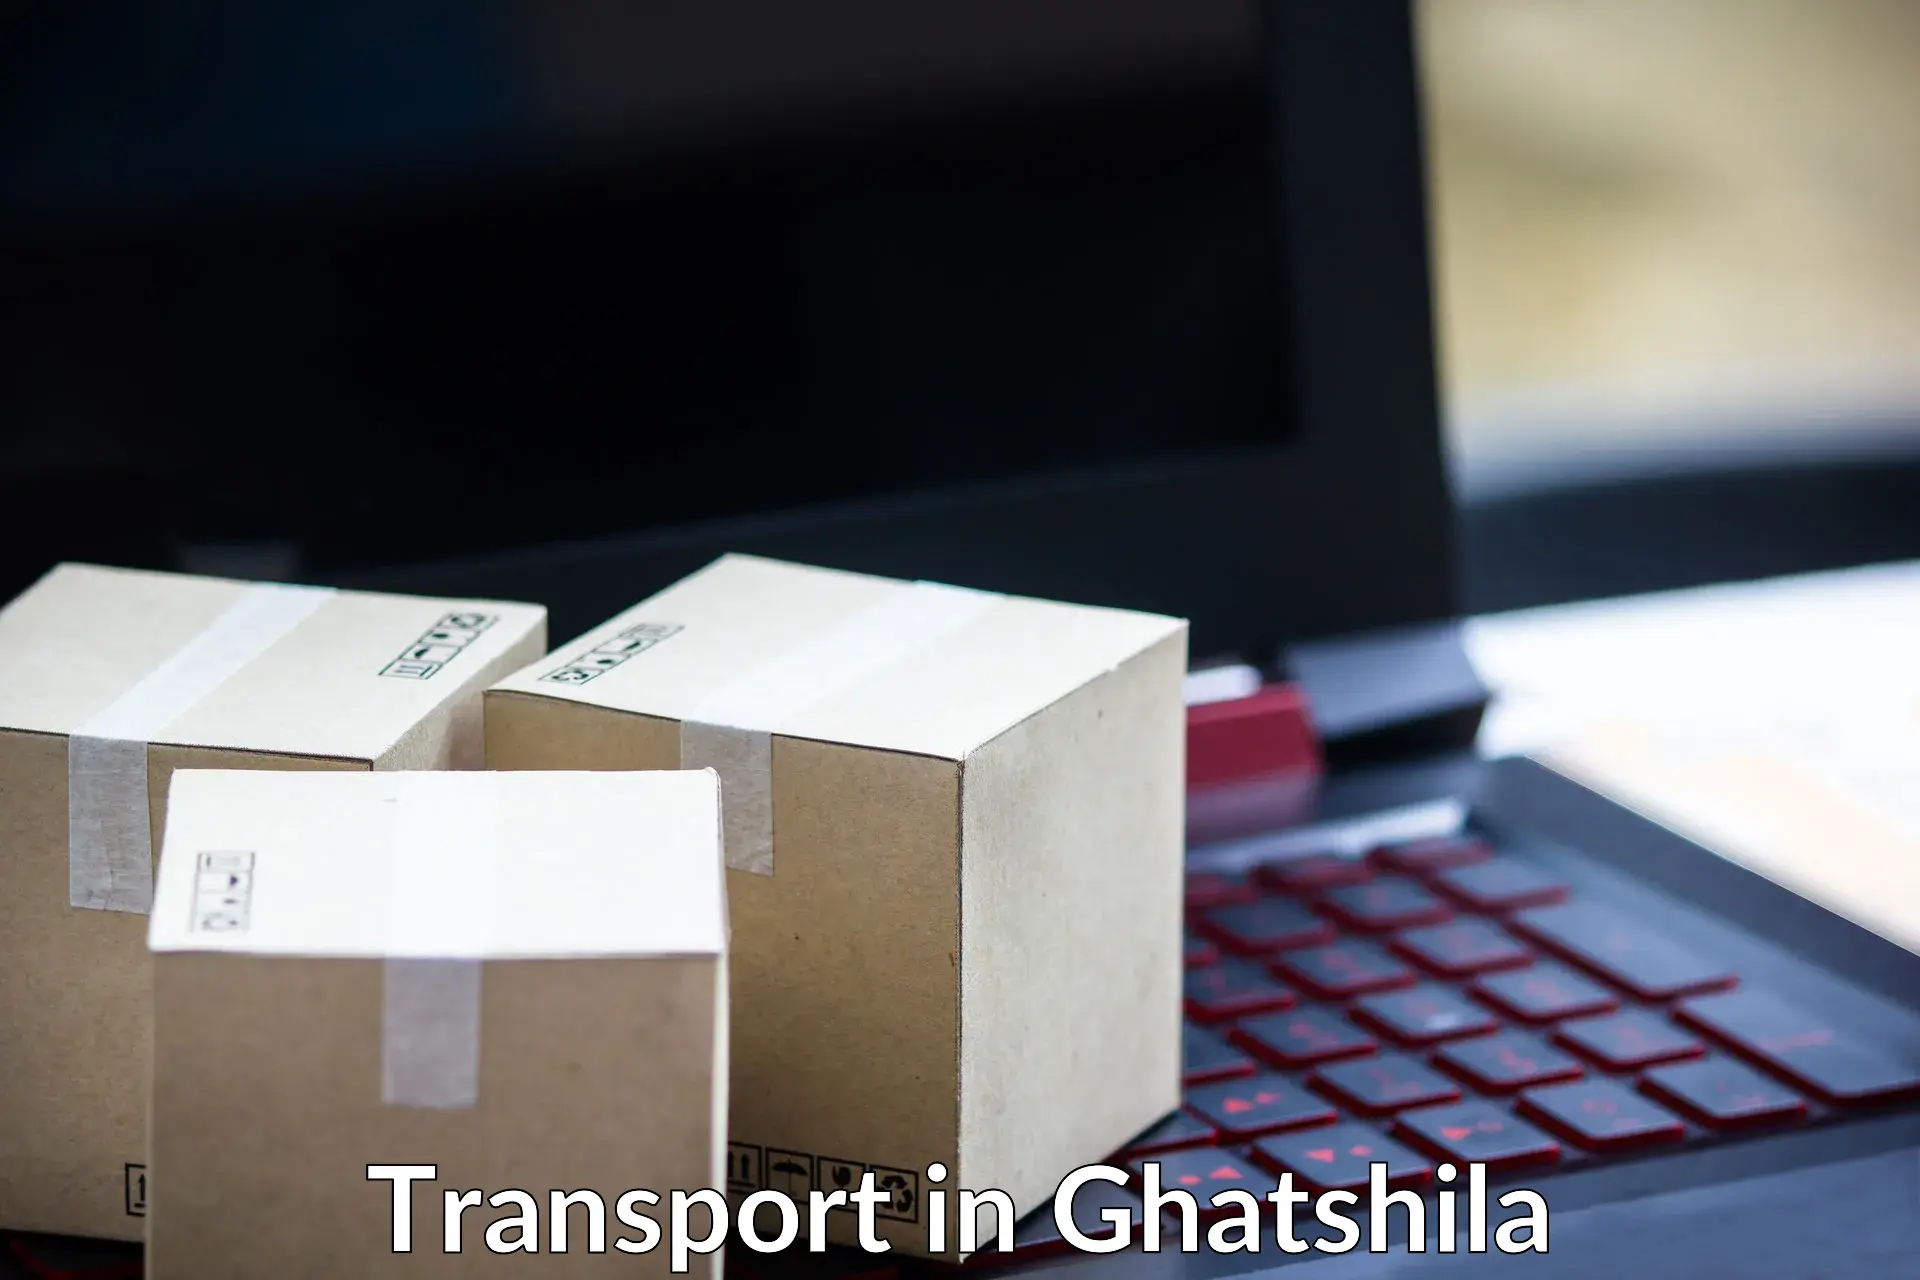 Daily parcel service transport in Ghatshila